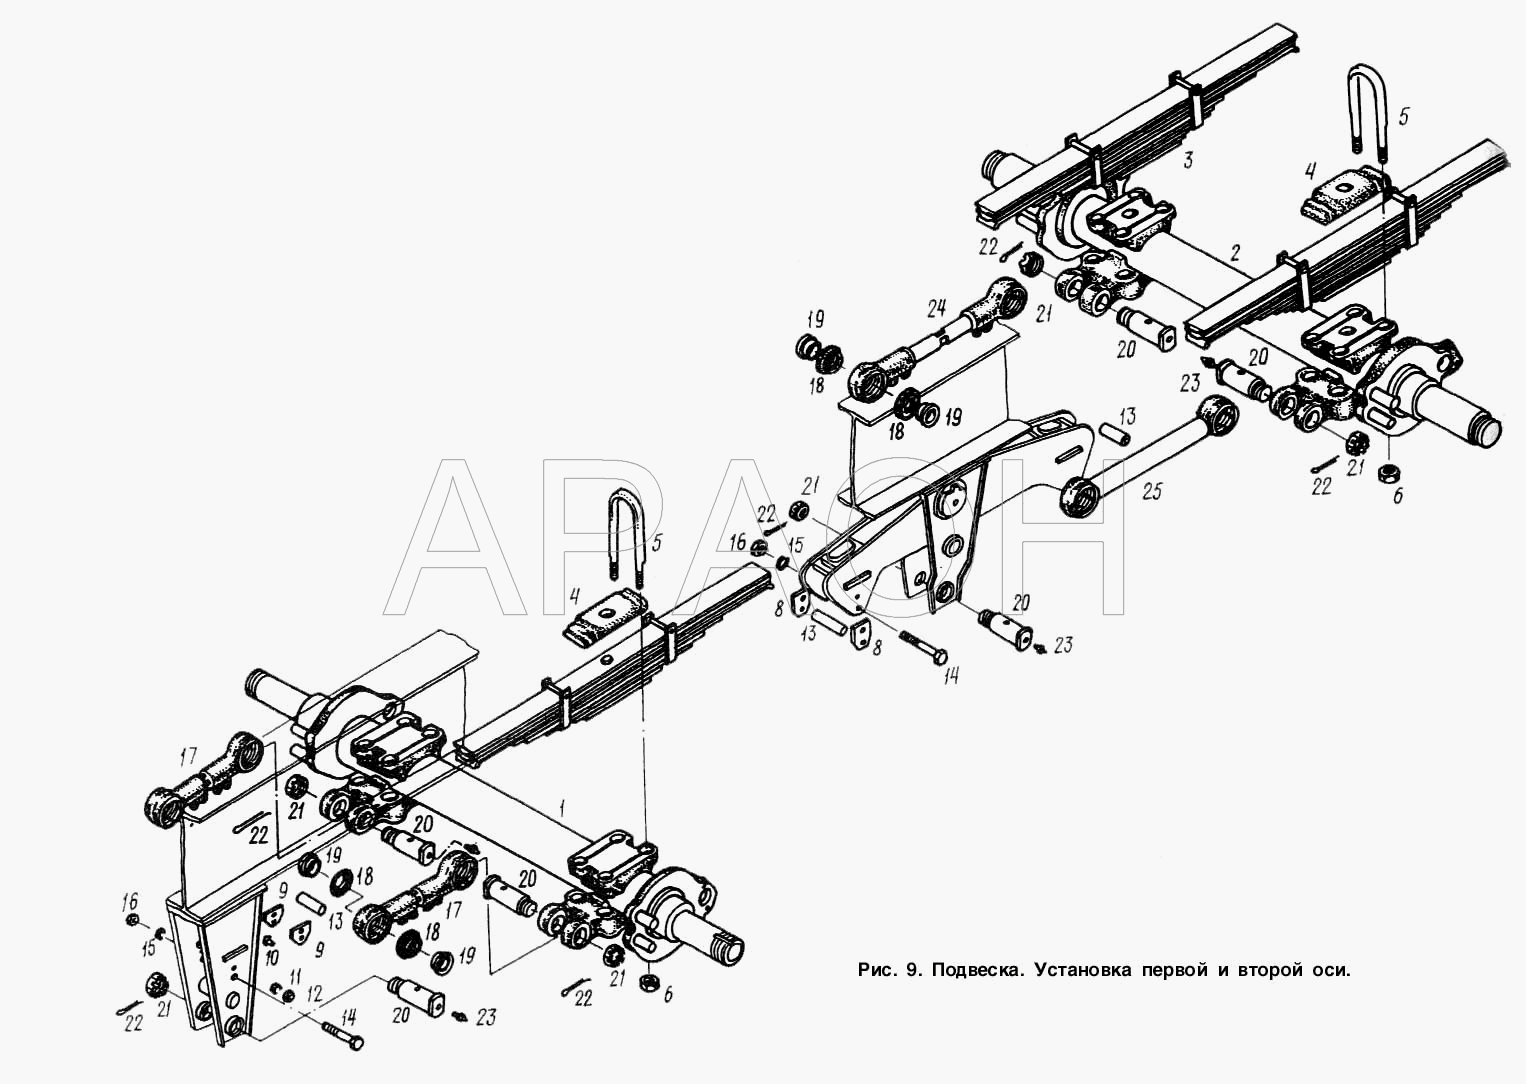 Подвеска. Установка первой и второй оси МАЗ-9758-30